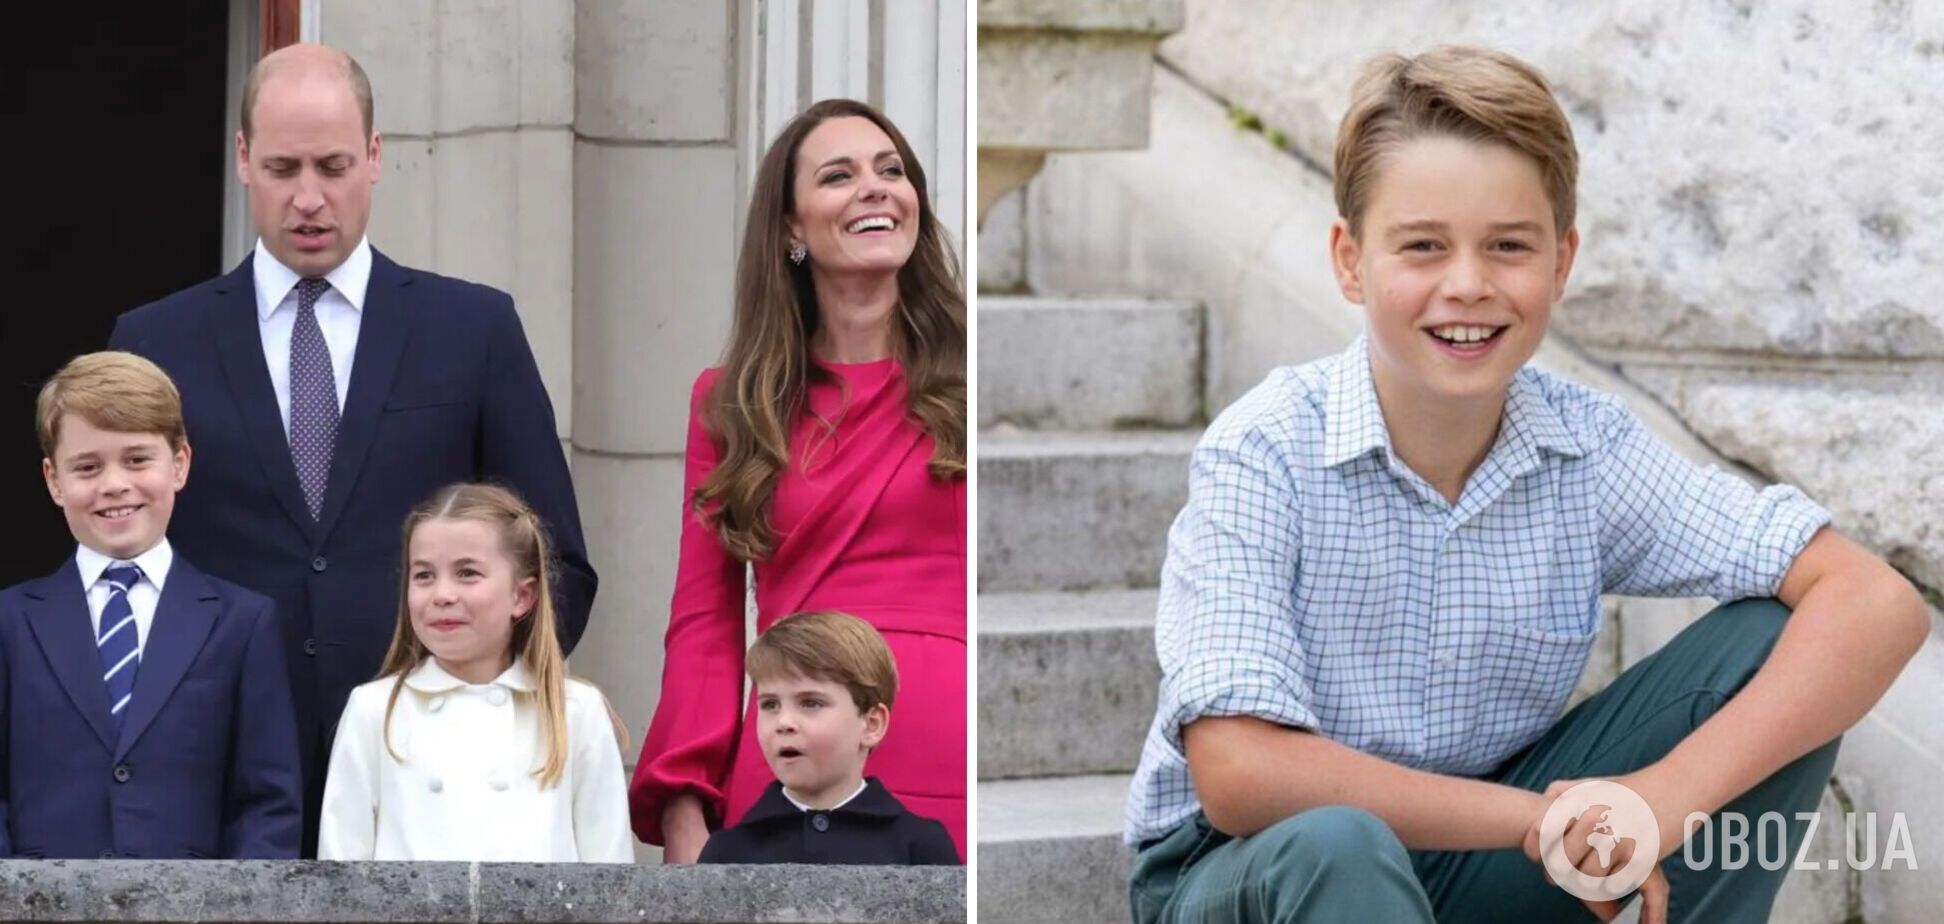 Стало відомо, куди відправлять вчитися принца Джорджа: Кейт Міддлтон і принц Вільям зупинилися на двох елітних варіантах